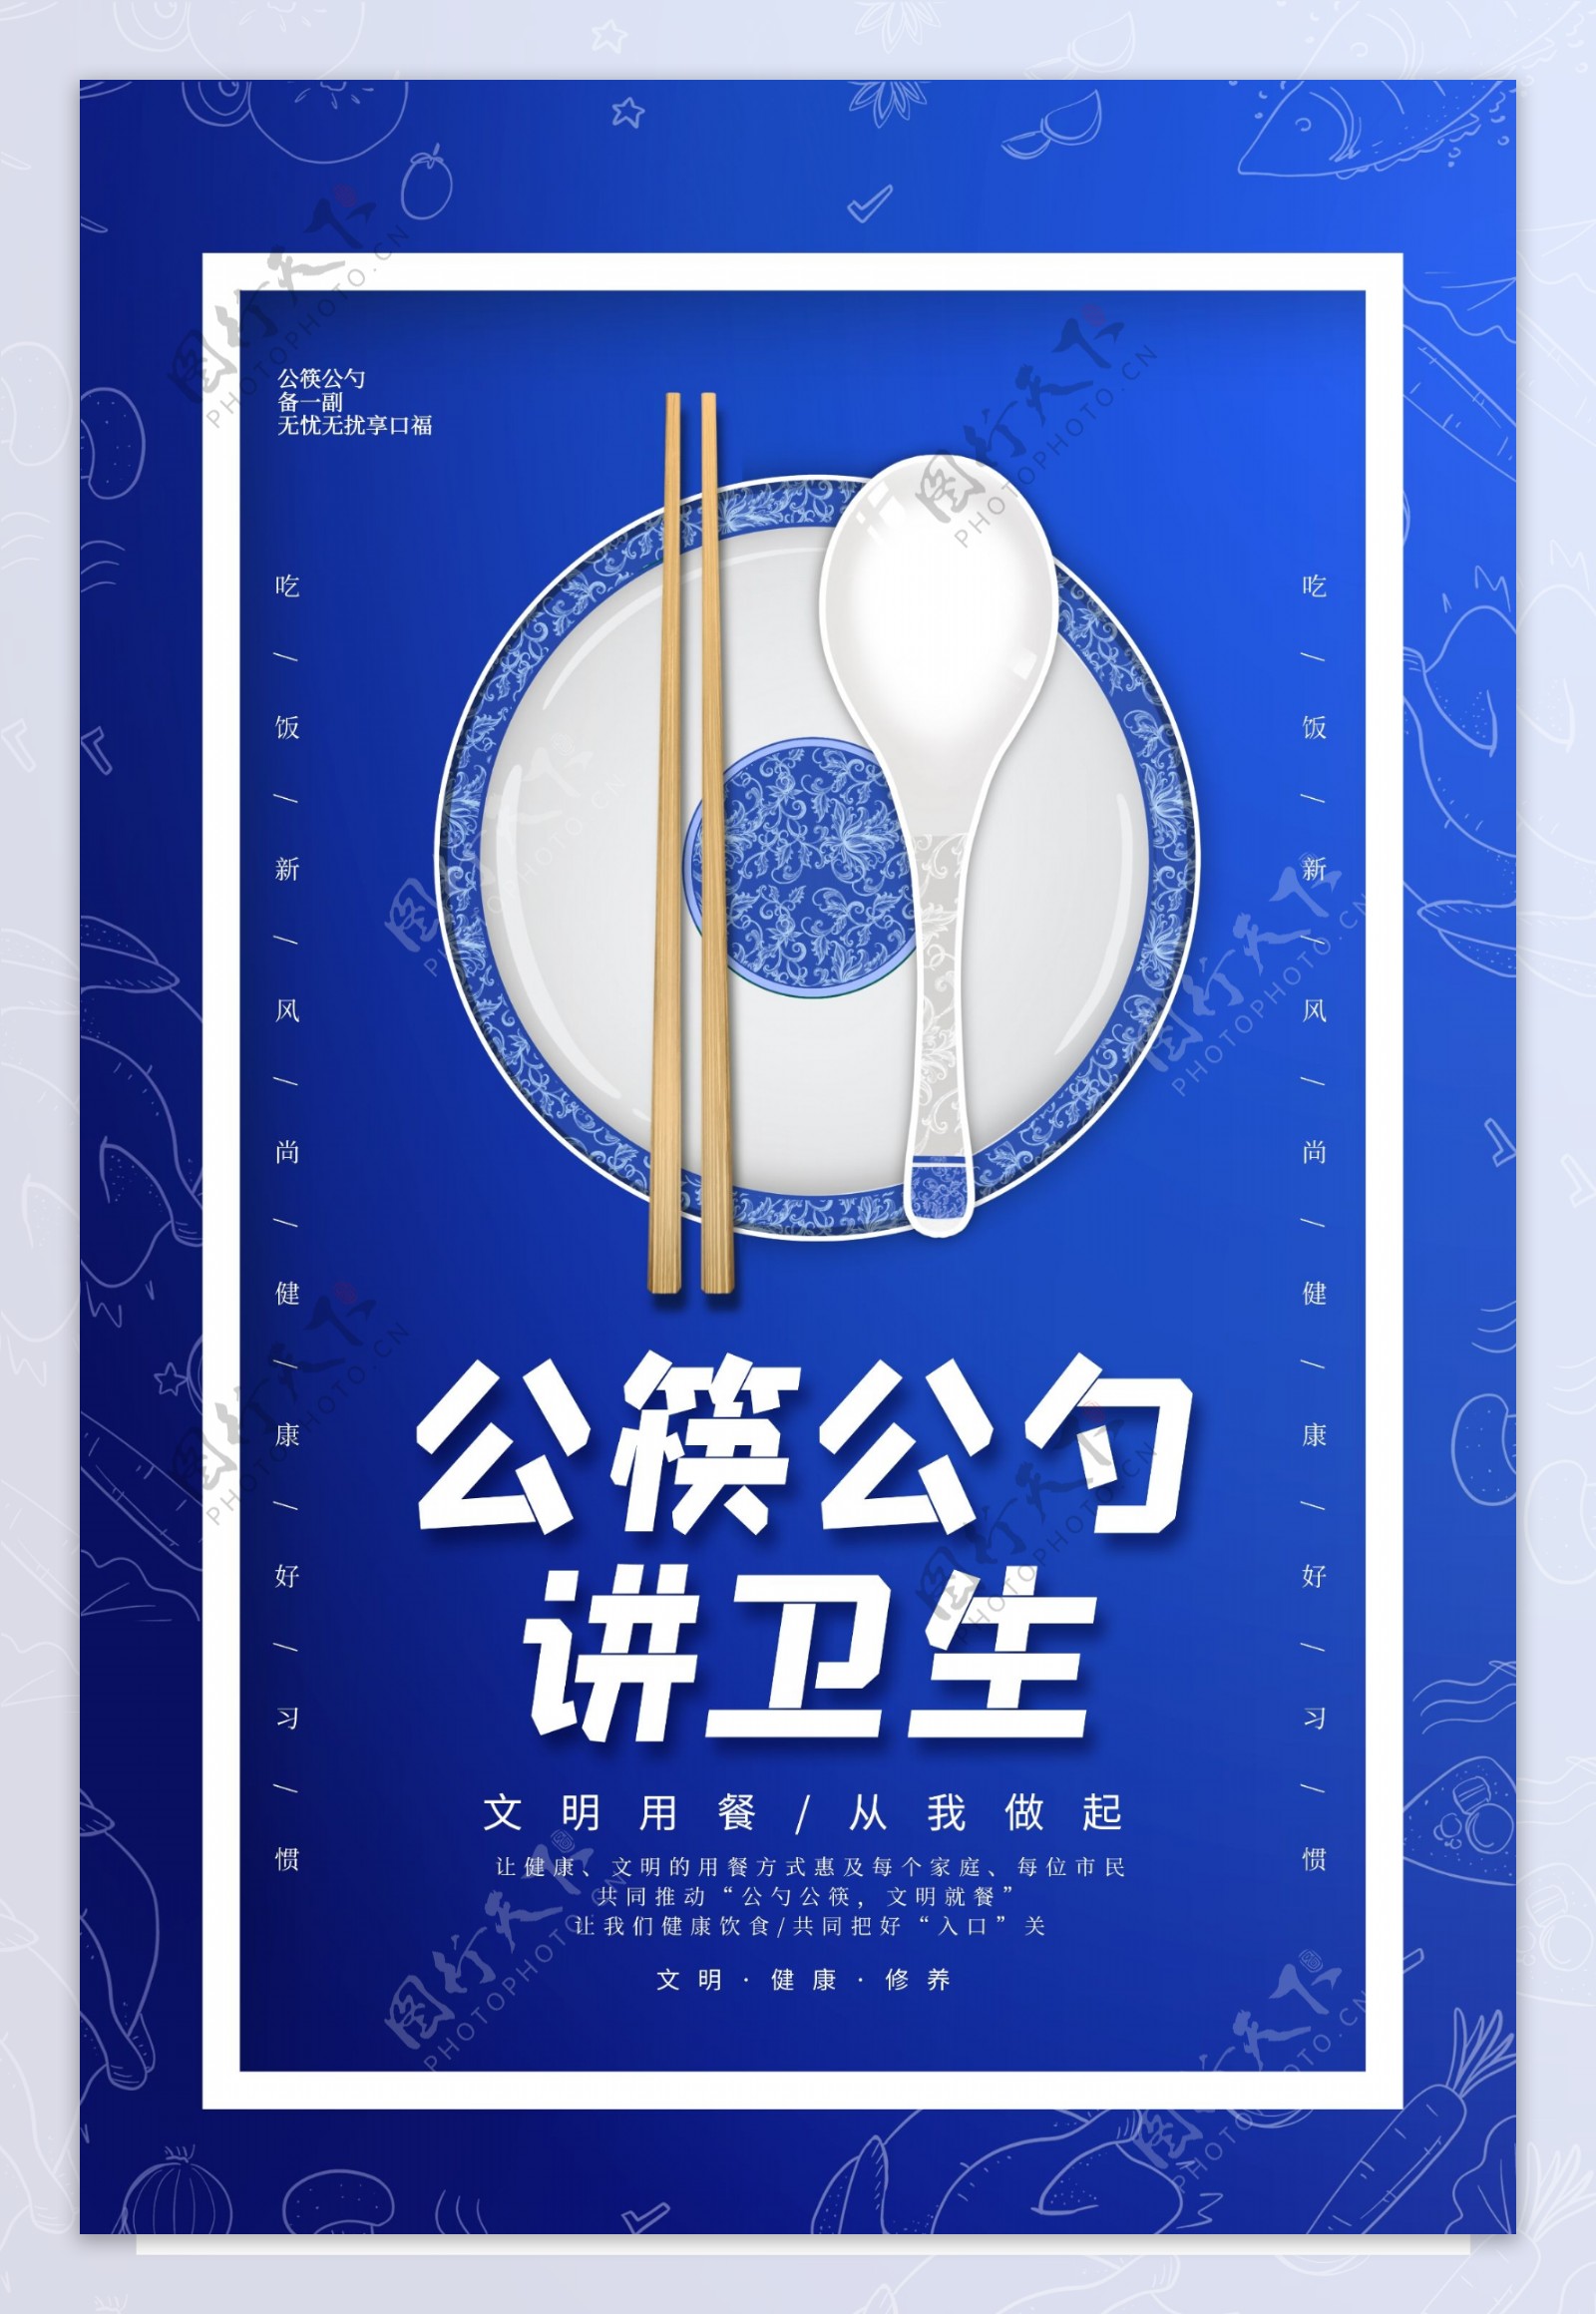 公勺公筷社会公益宣传海报素材